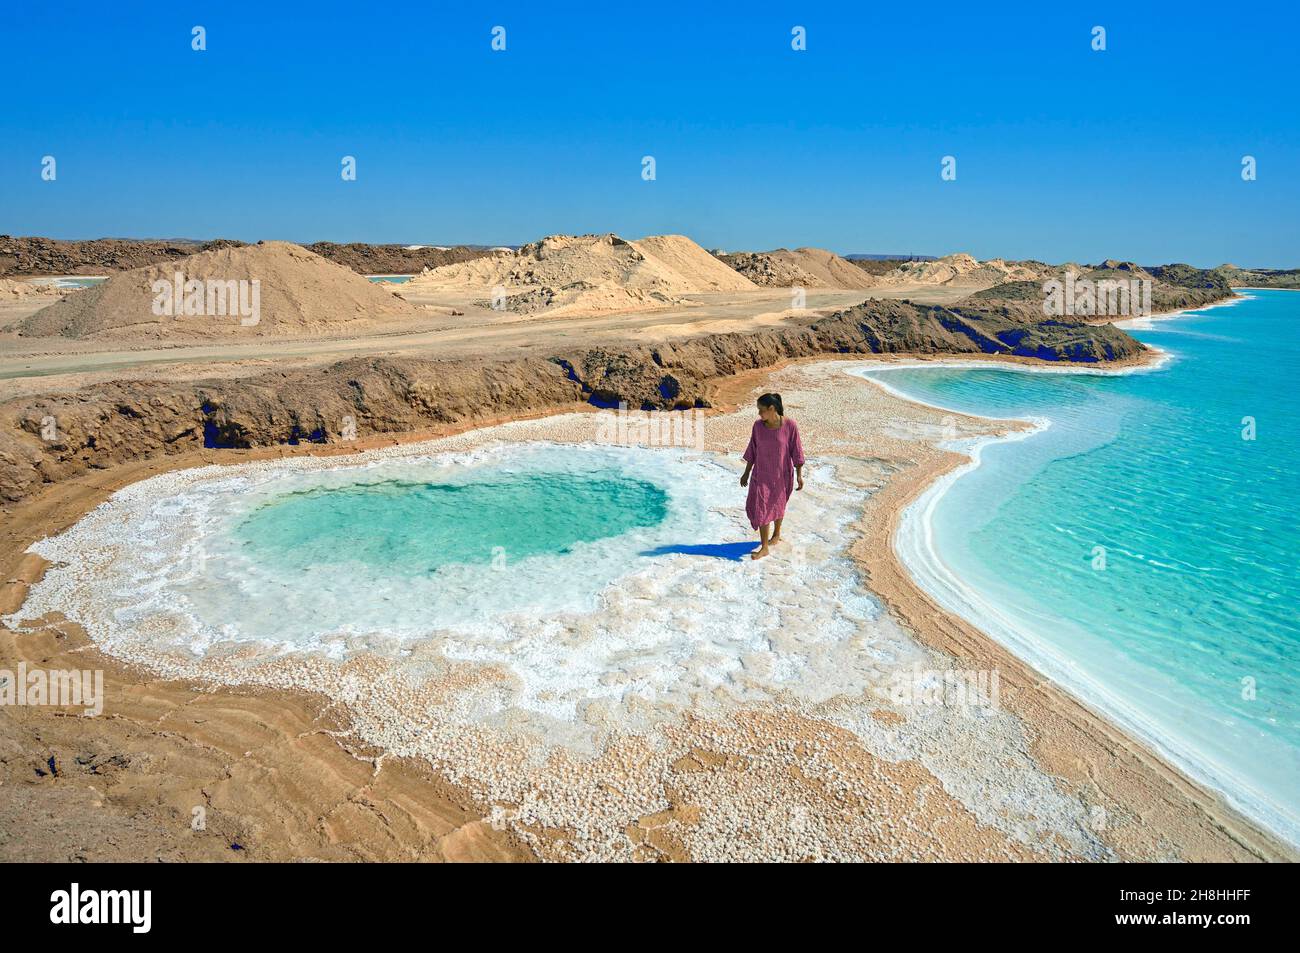 Egitto, deserto libico, governatorato di Marsa Matruh, oasi di Siwa, laghetti salati del lago Aghurmi Foto Stock